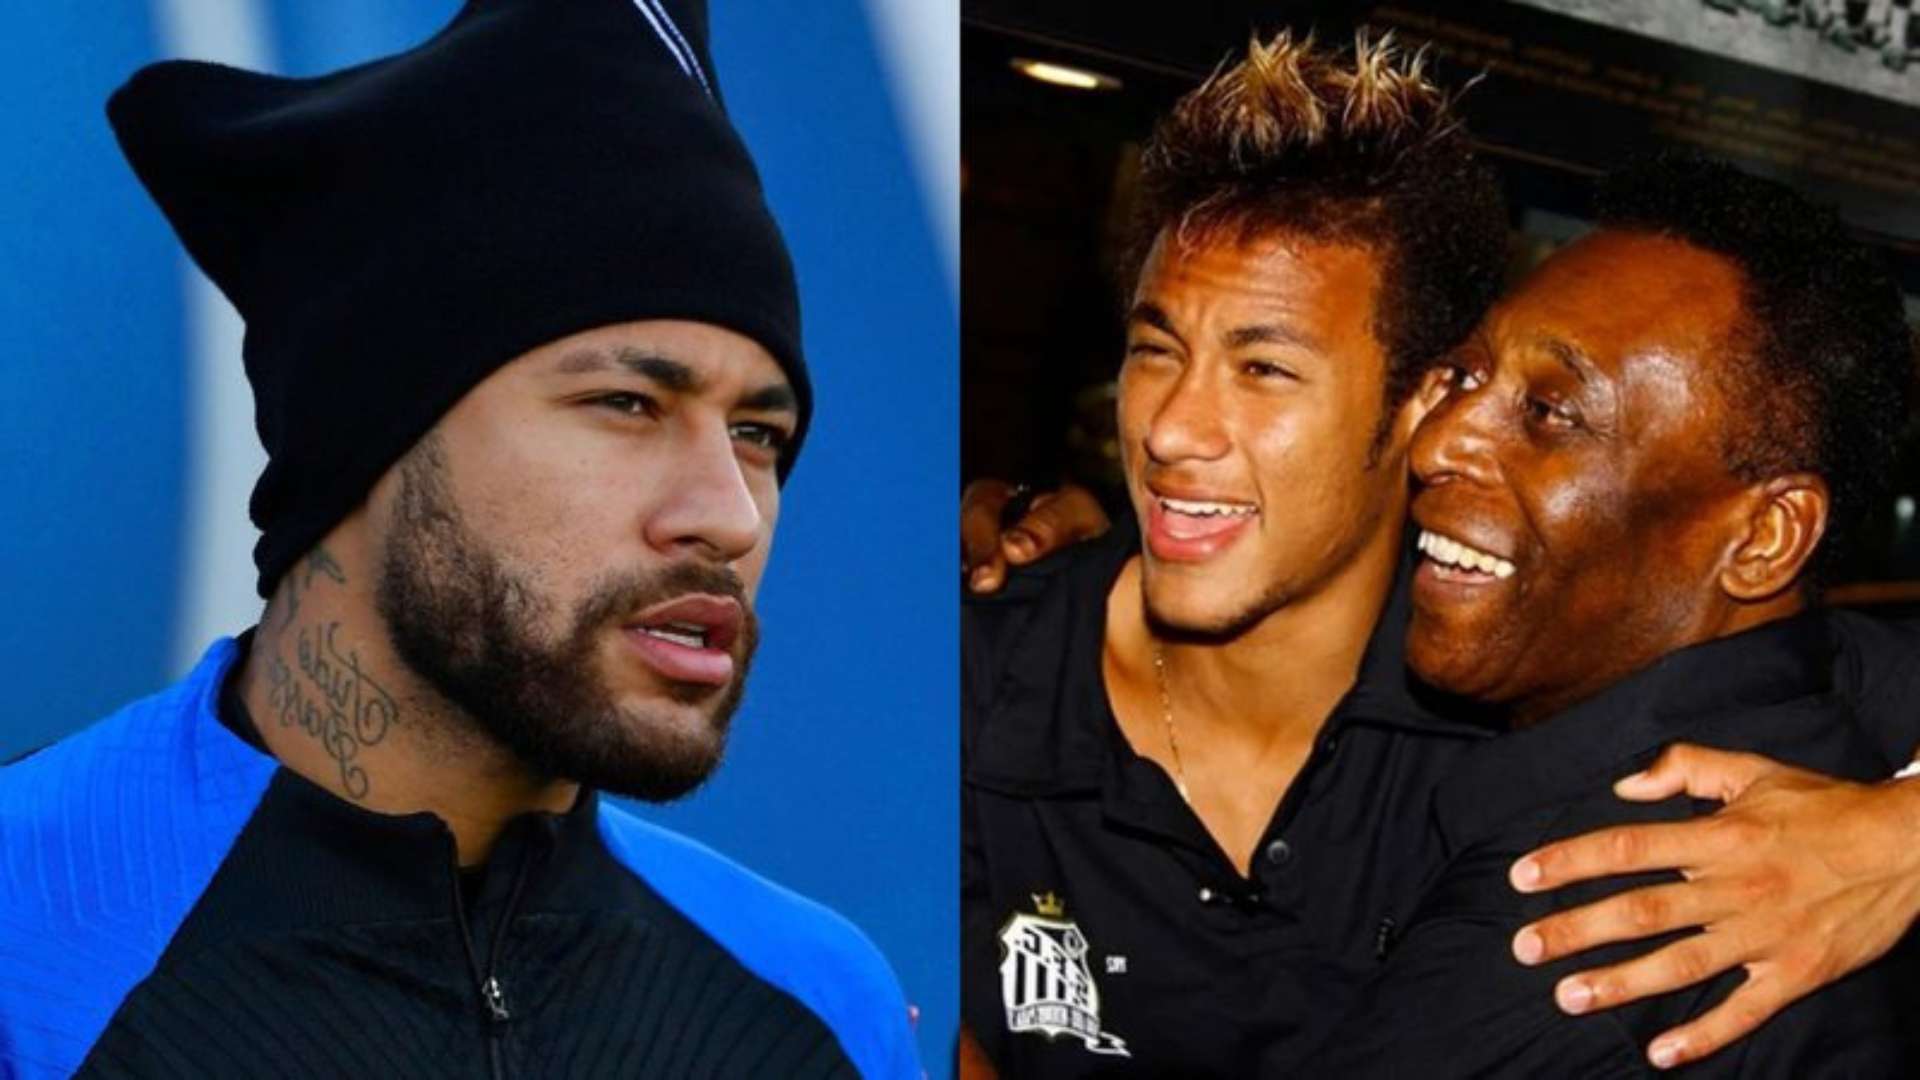 Após faltar ao velório de Pelé, Neymar é desmentido por setorista do PSG: “Não proibimos” - Metropolitana FM